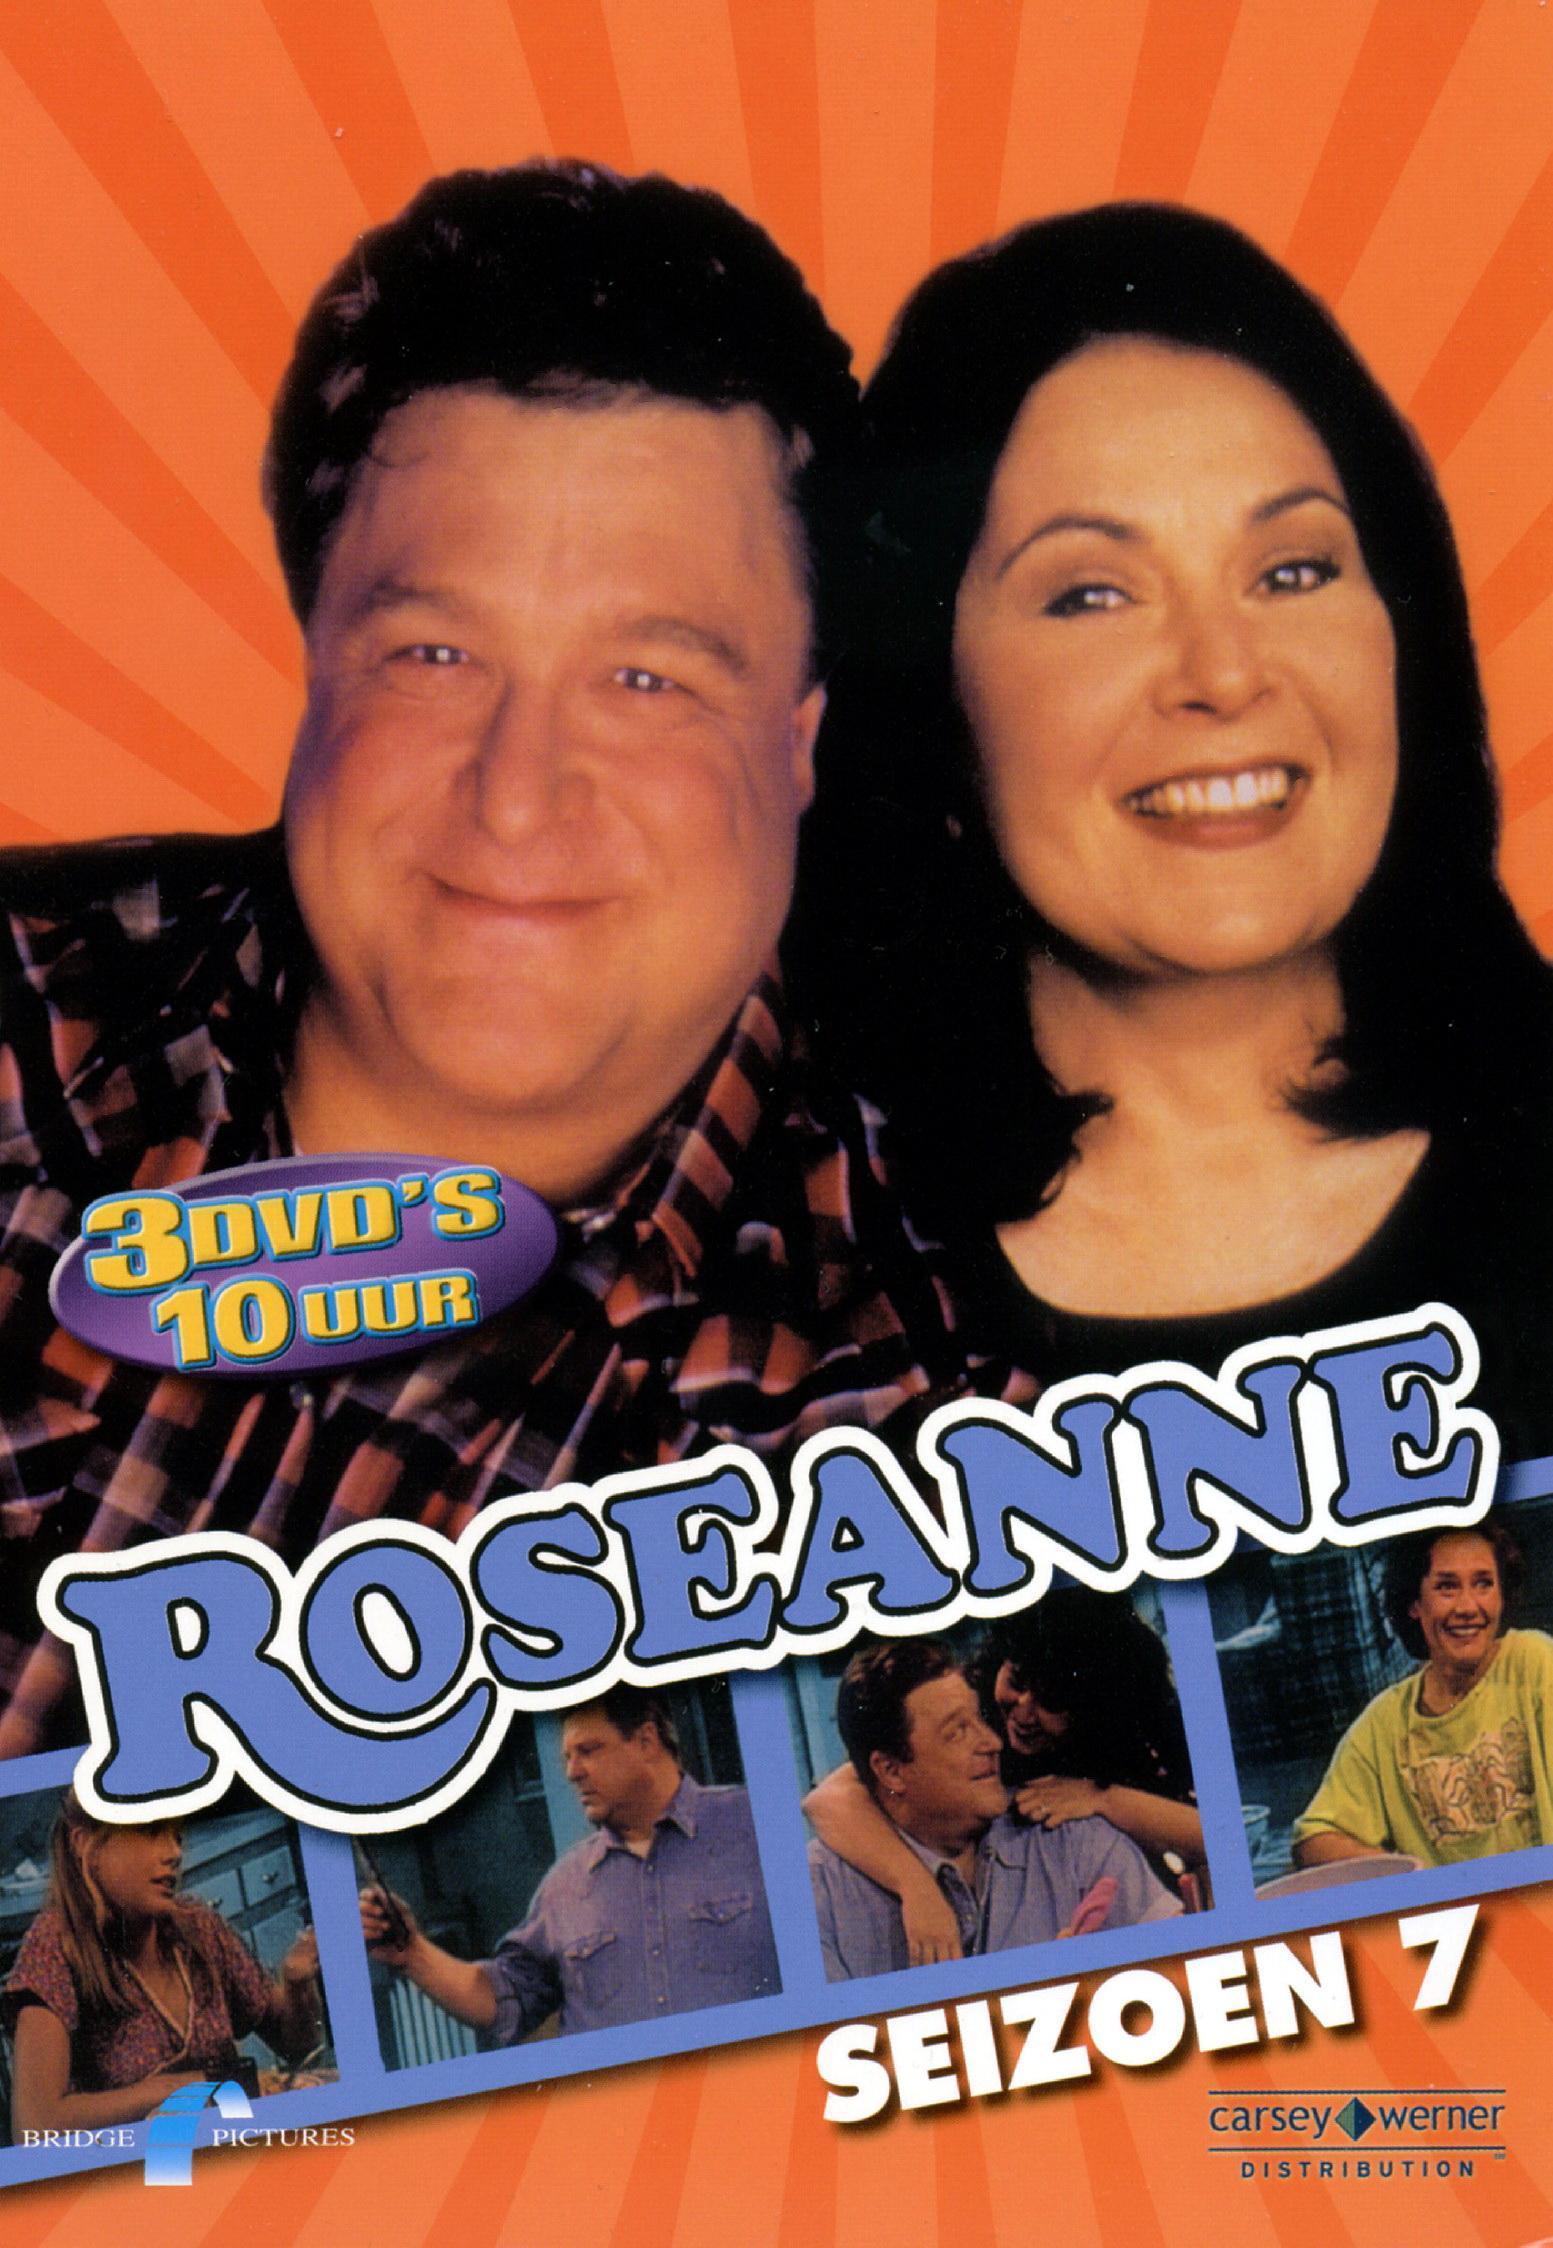 Постер фильма Розанна | Roseanne